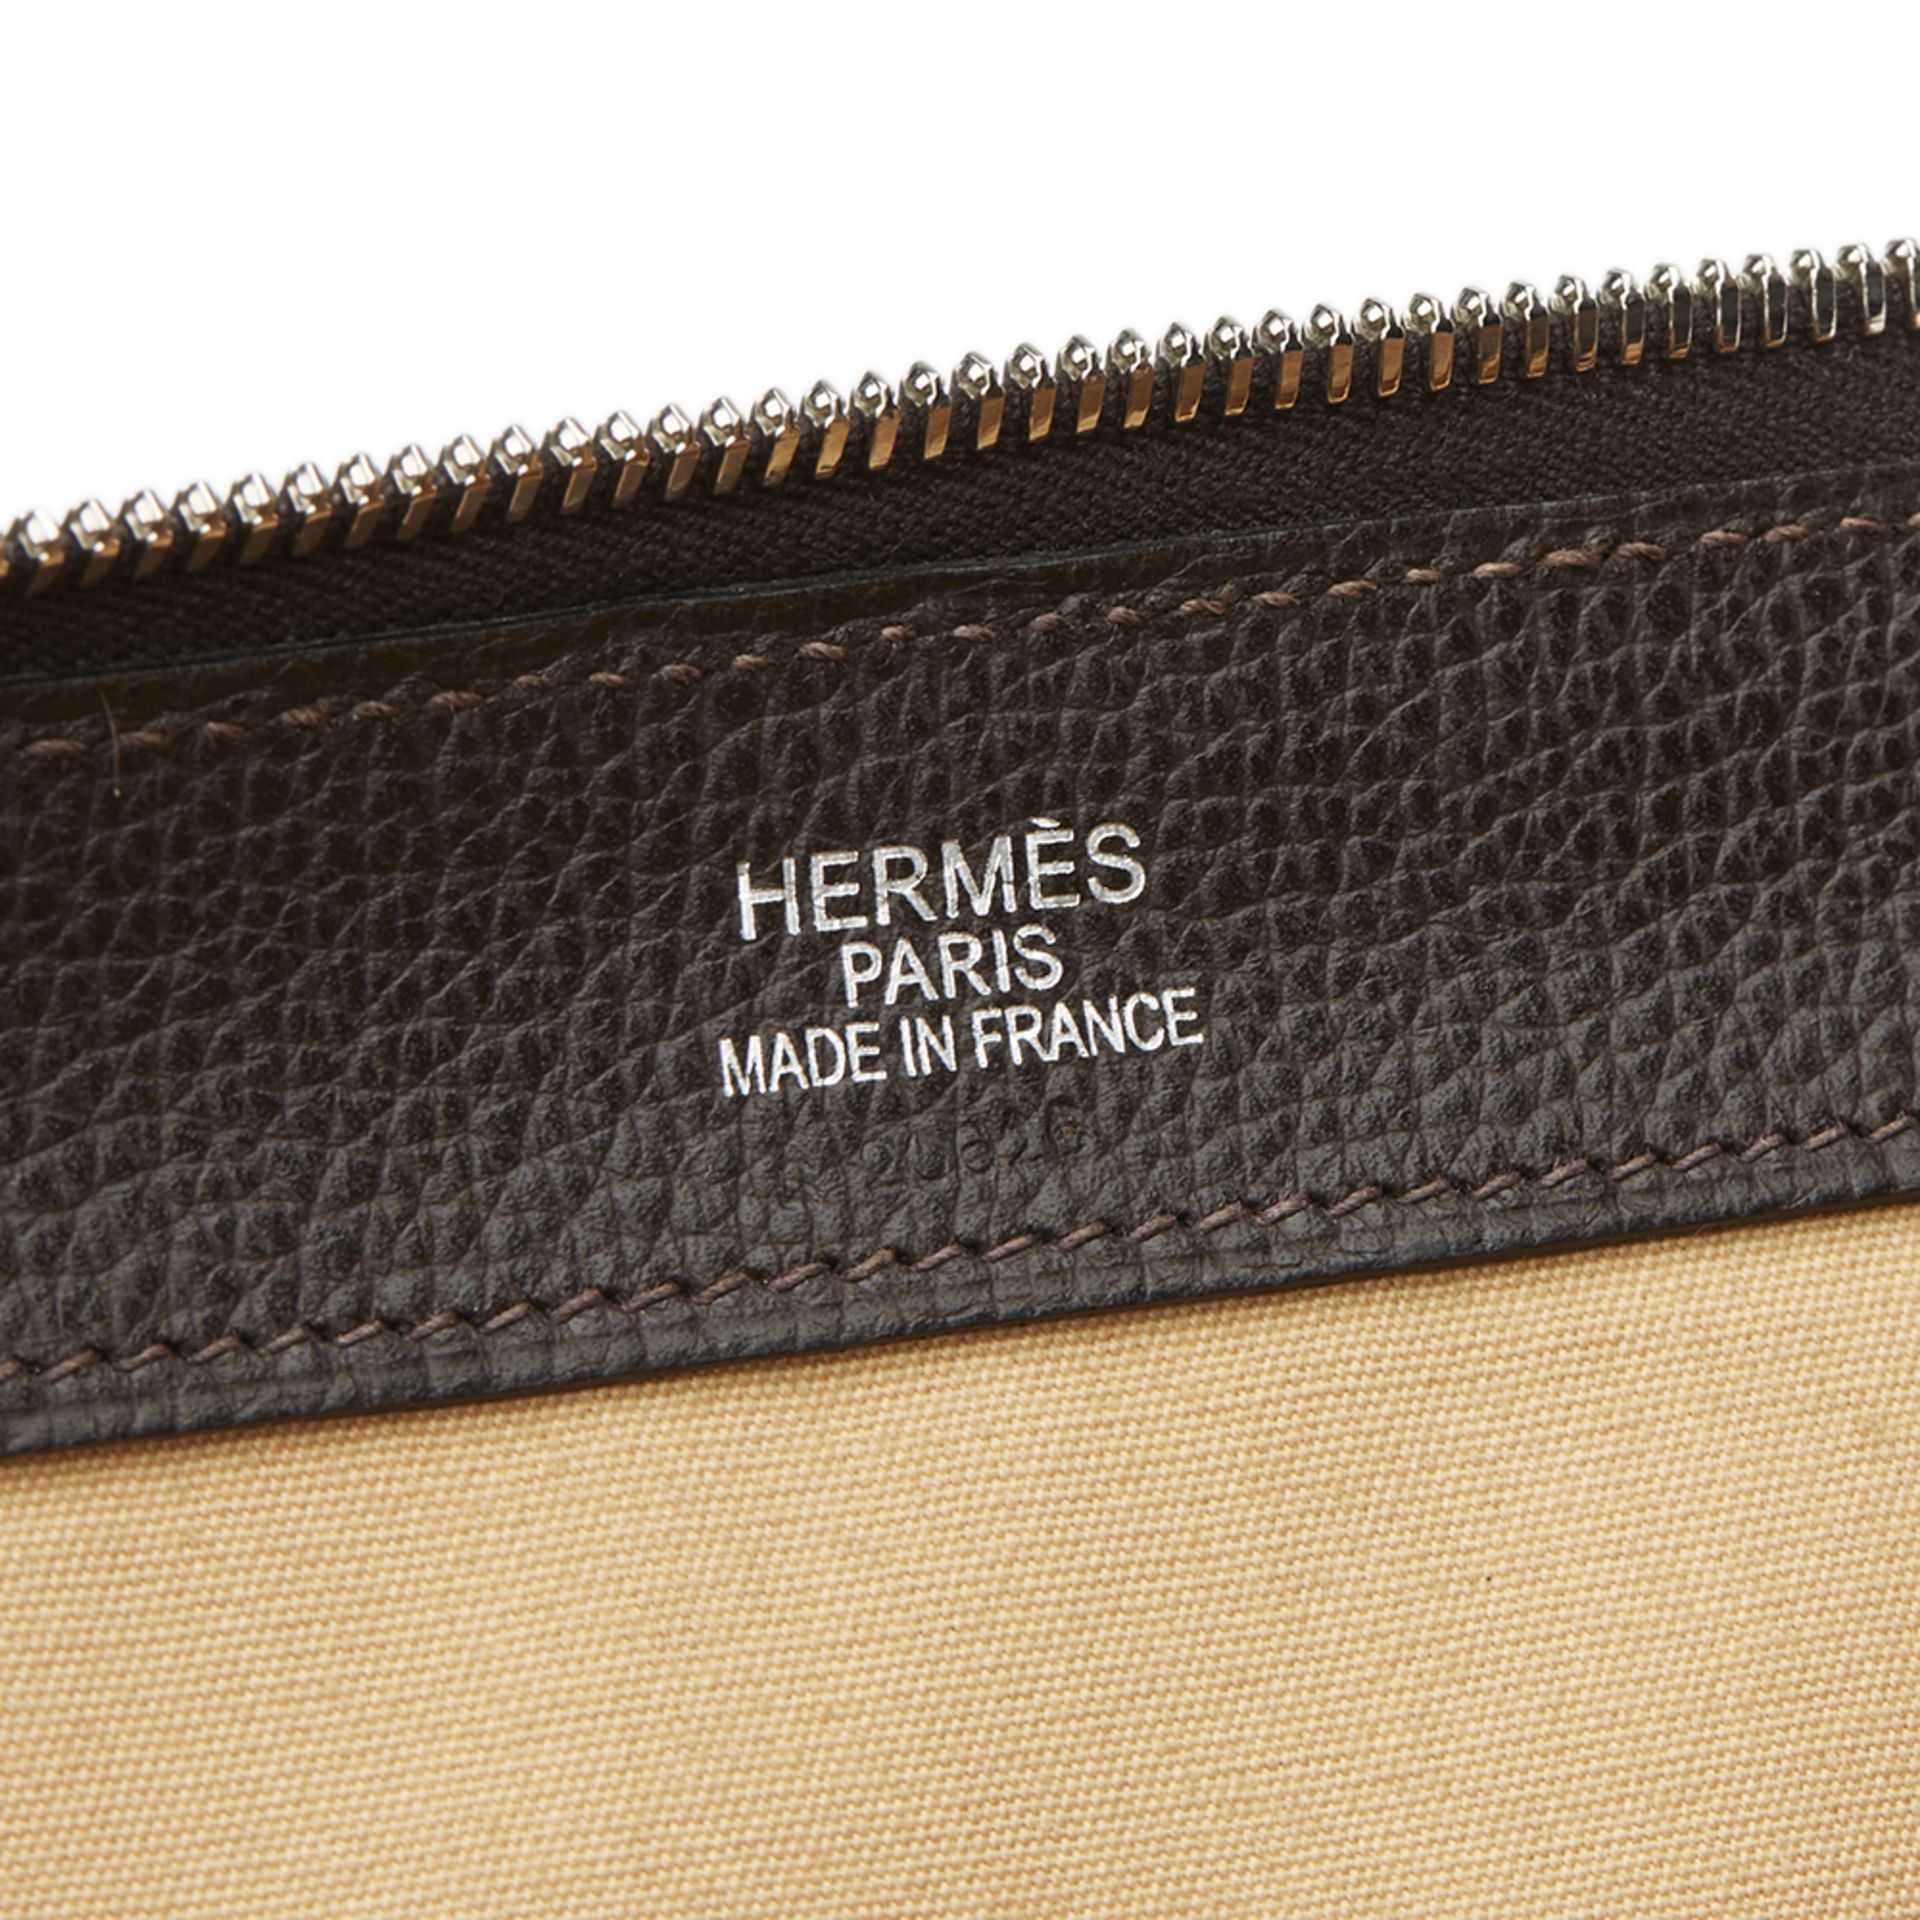 Hermes Paris Bombay 50 - Image 8 of 11